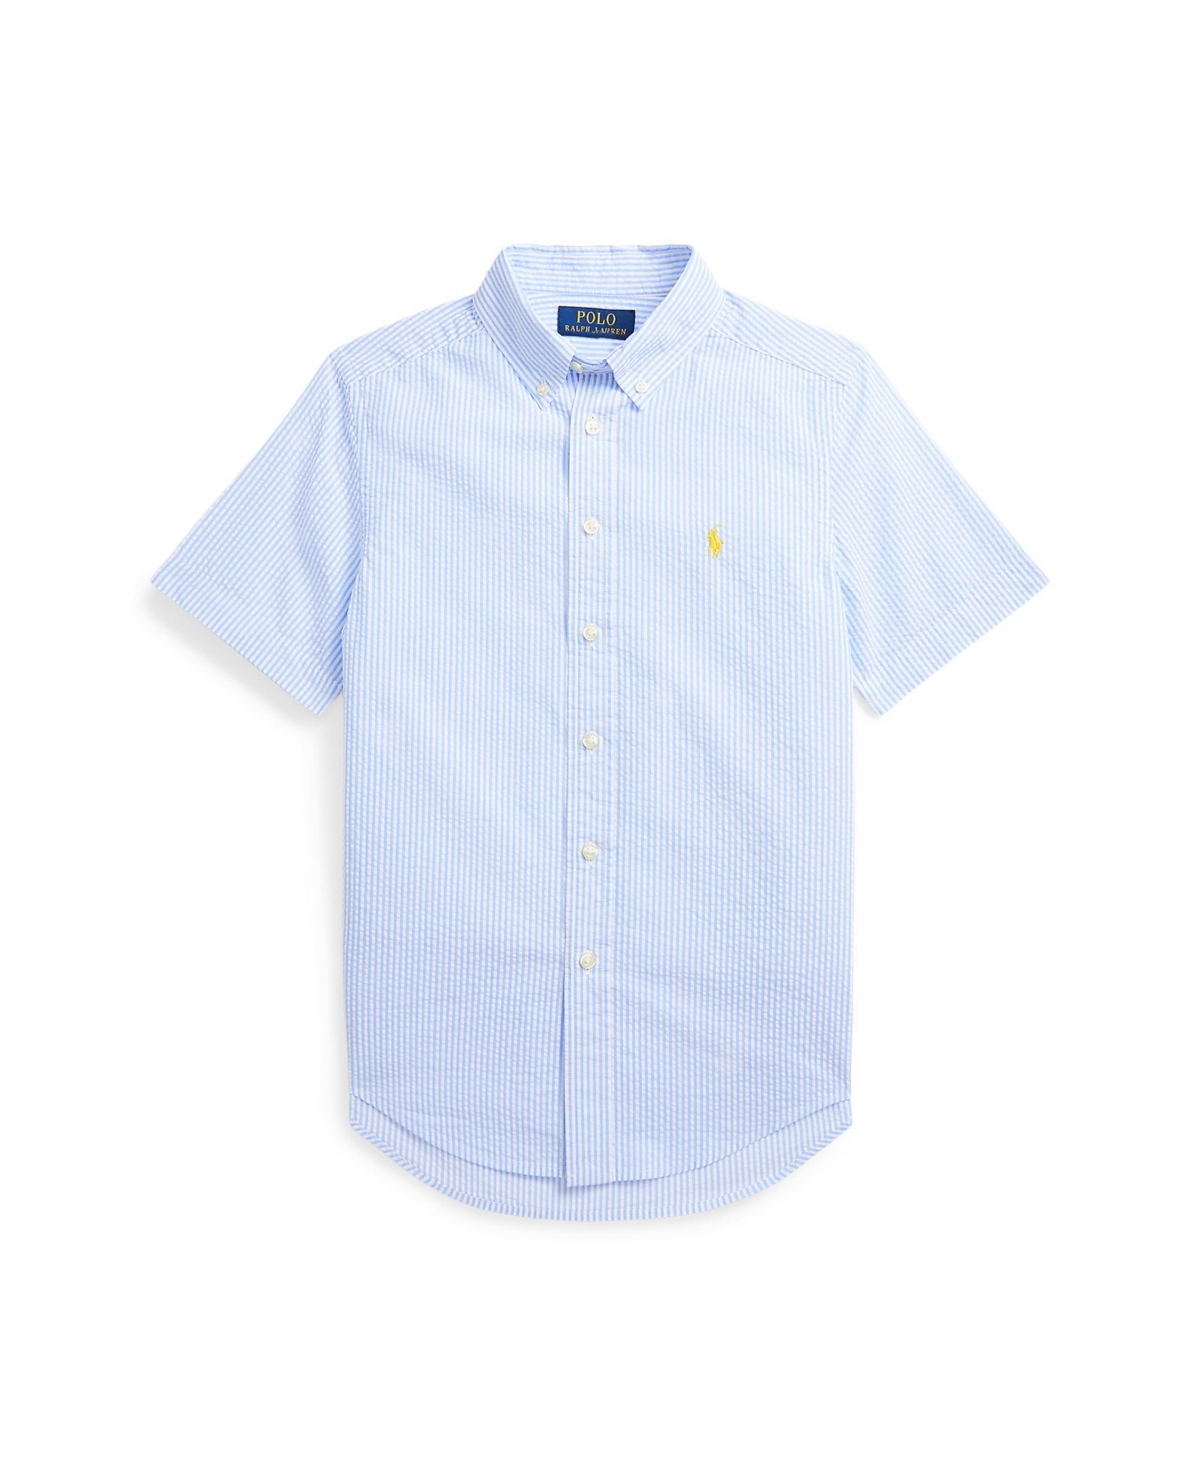 Shop Polo Ralph Lauren Toddler And Little Boys Seersucker Short Sleeve Shirt In A Blue,white